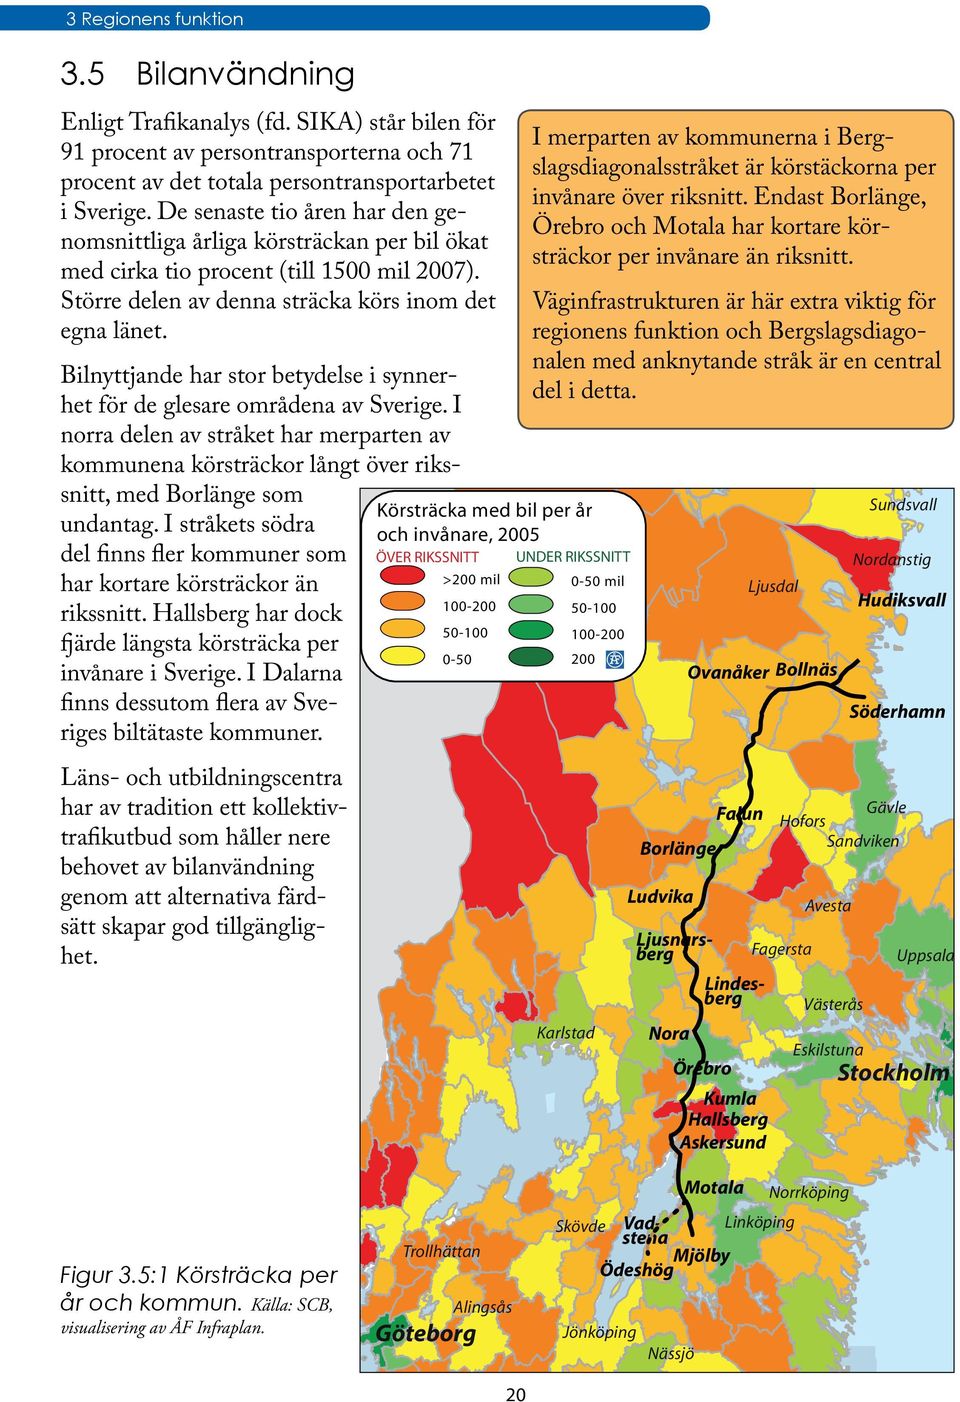 Bilnyttjande har stor betydelse i synnerhet för de glesare områdena av Sverige. I norra delen av stråket har merparten av kommunena körsträckor långt över rikssnitt, med Borlänge som undantag.